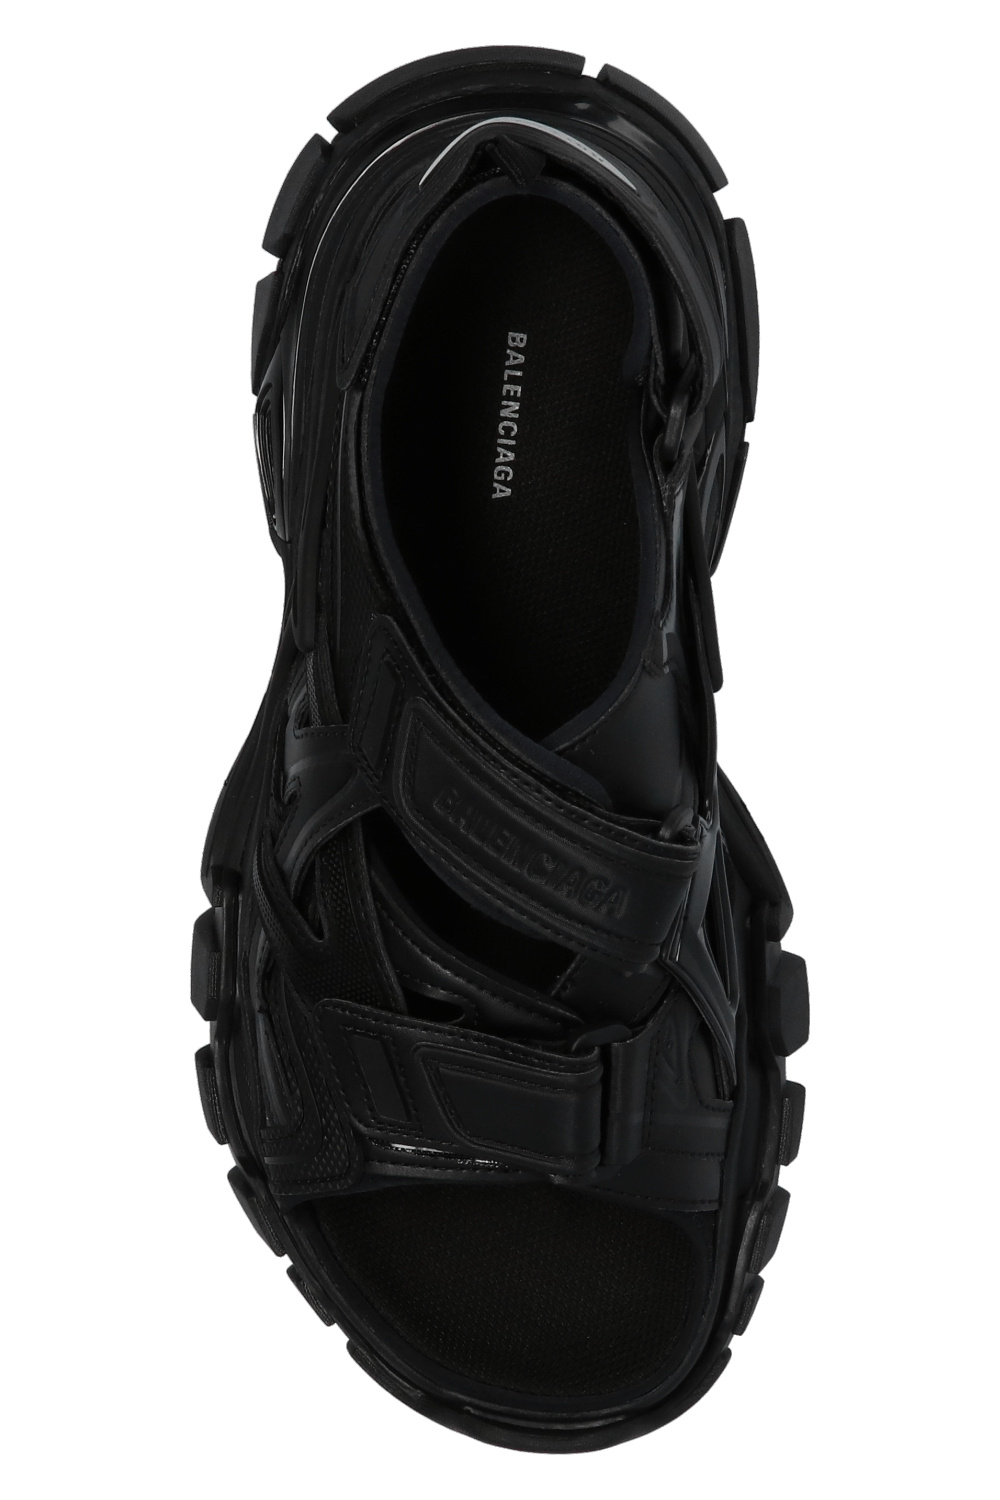 BALENCIAGA  Track Flat Sandals  Men  Black 1000  Flannels